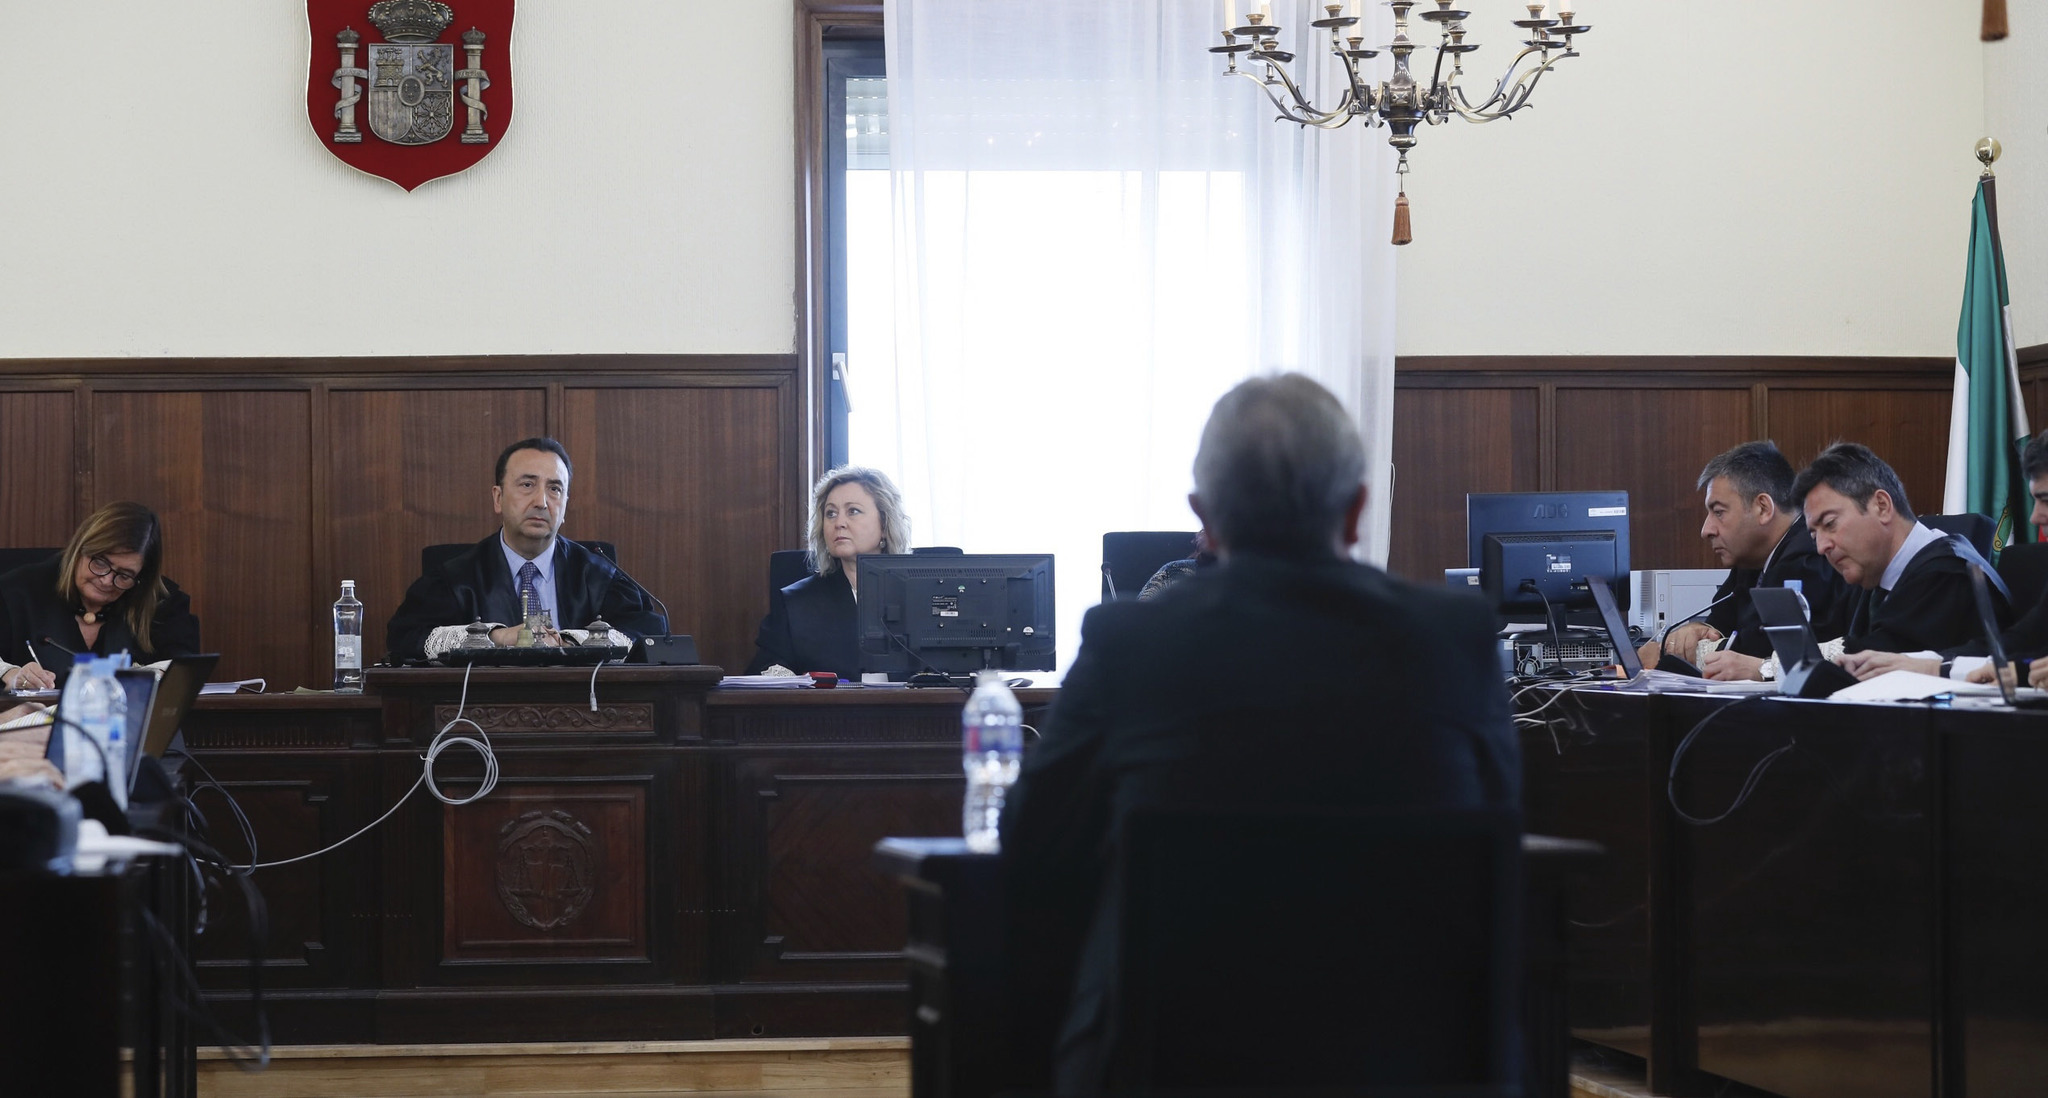 De espaldas, el ex consejero de Empleo, Manuel Recio, declarando en la Audiencia de Sevilla en el juicio de los ERE sobre la conocida como pieza poltica.